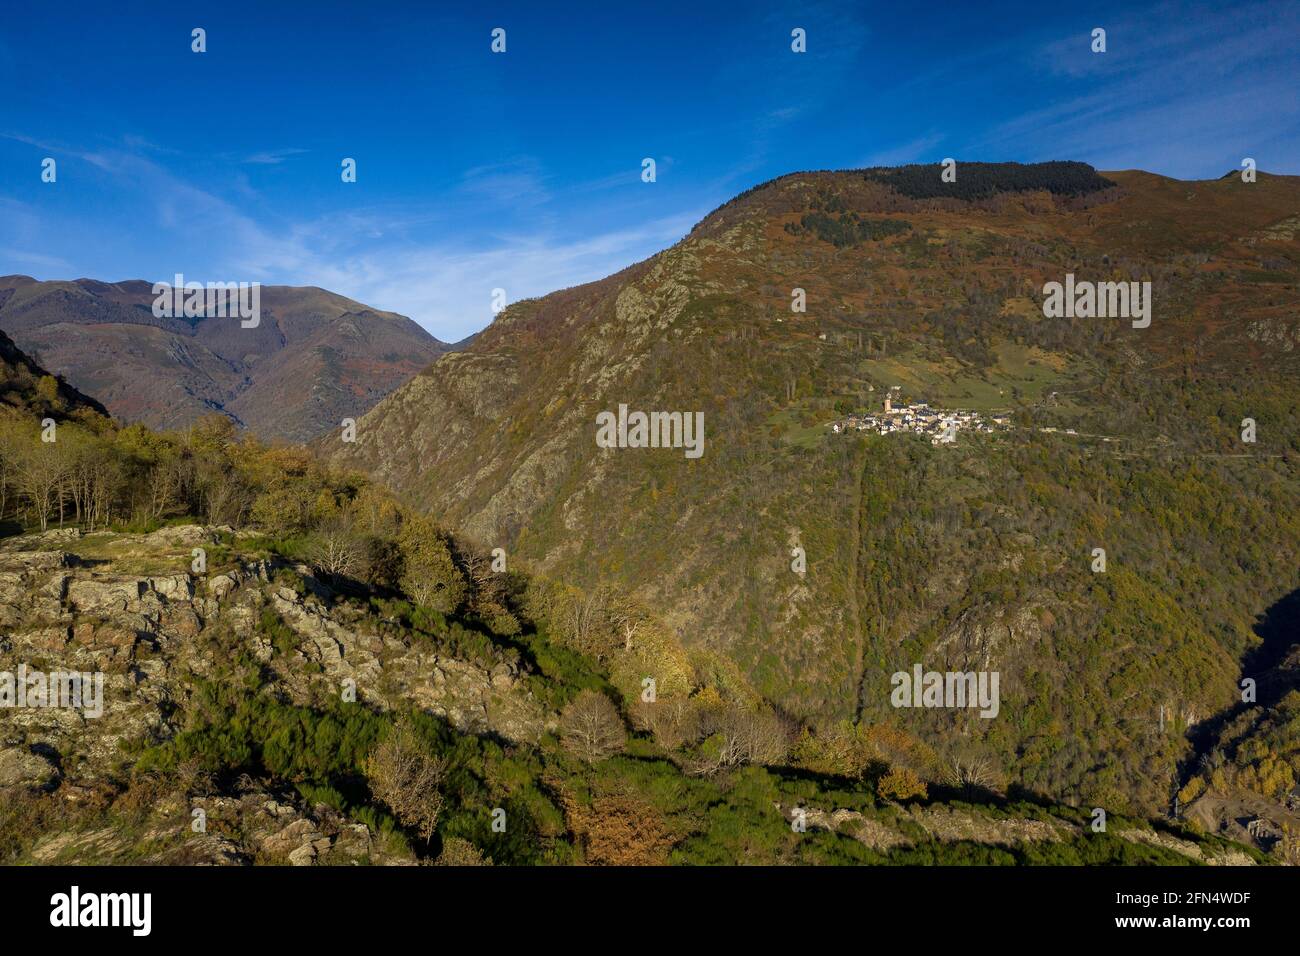 Vues aériennes sur les villages de Bausen et Canejan et les forêts environnantes en automne (Vallée de l'Aran, Catalogne, Espagne, Pyrénées) Banque D'Images